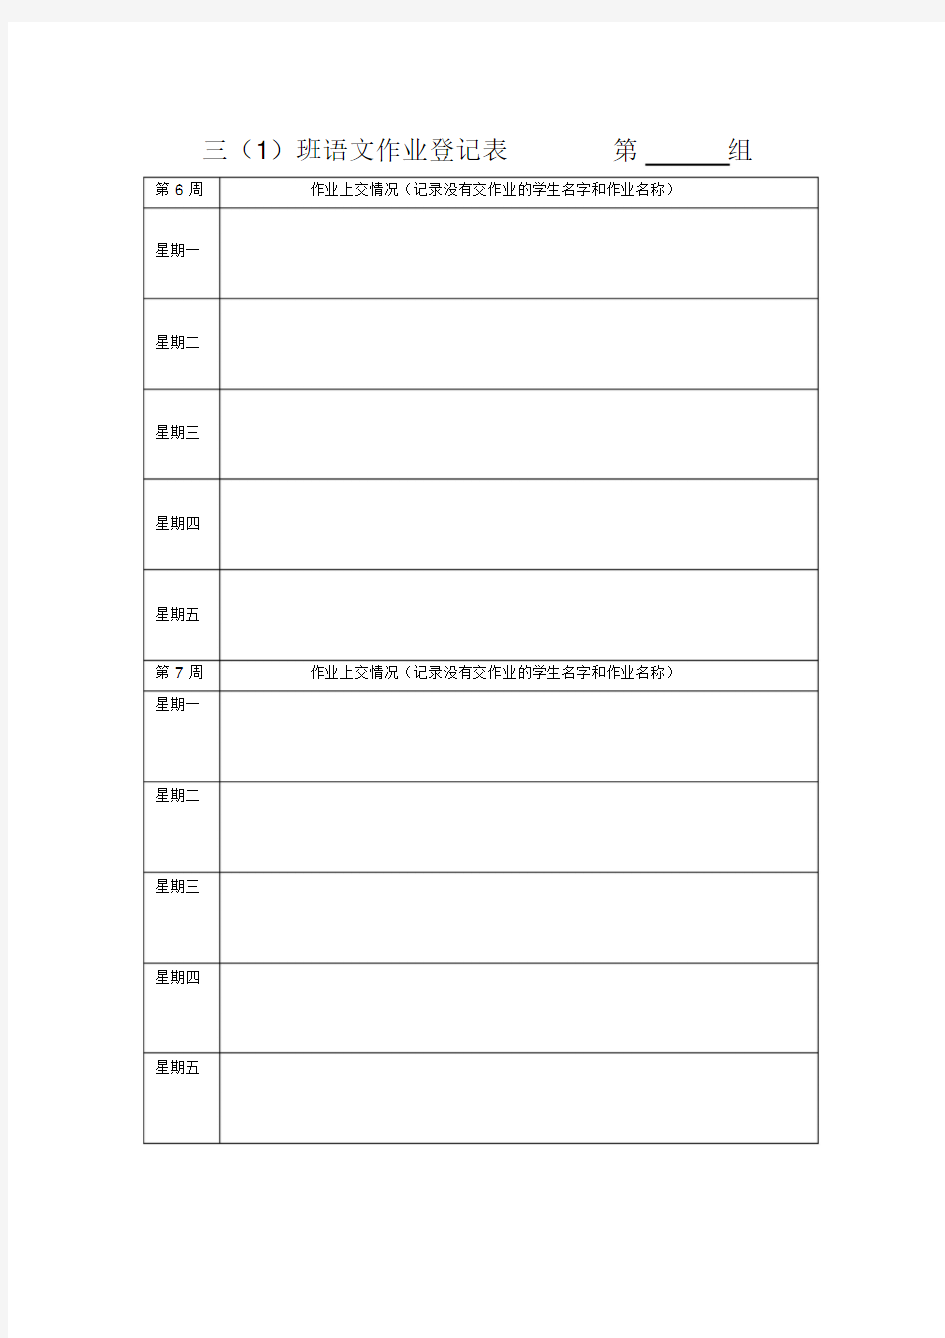 语文作业登记表